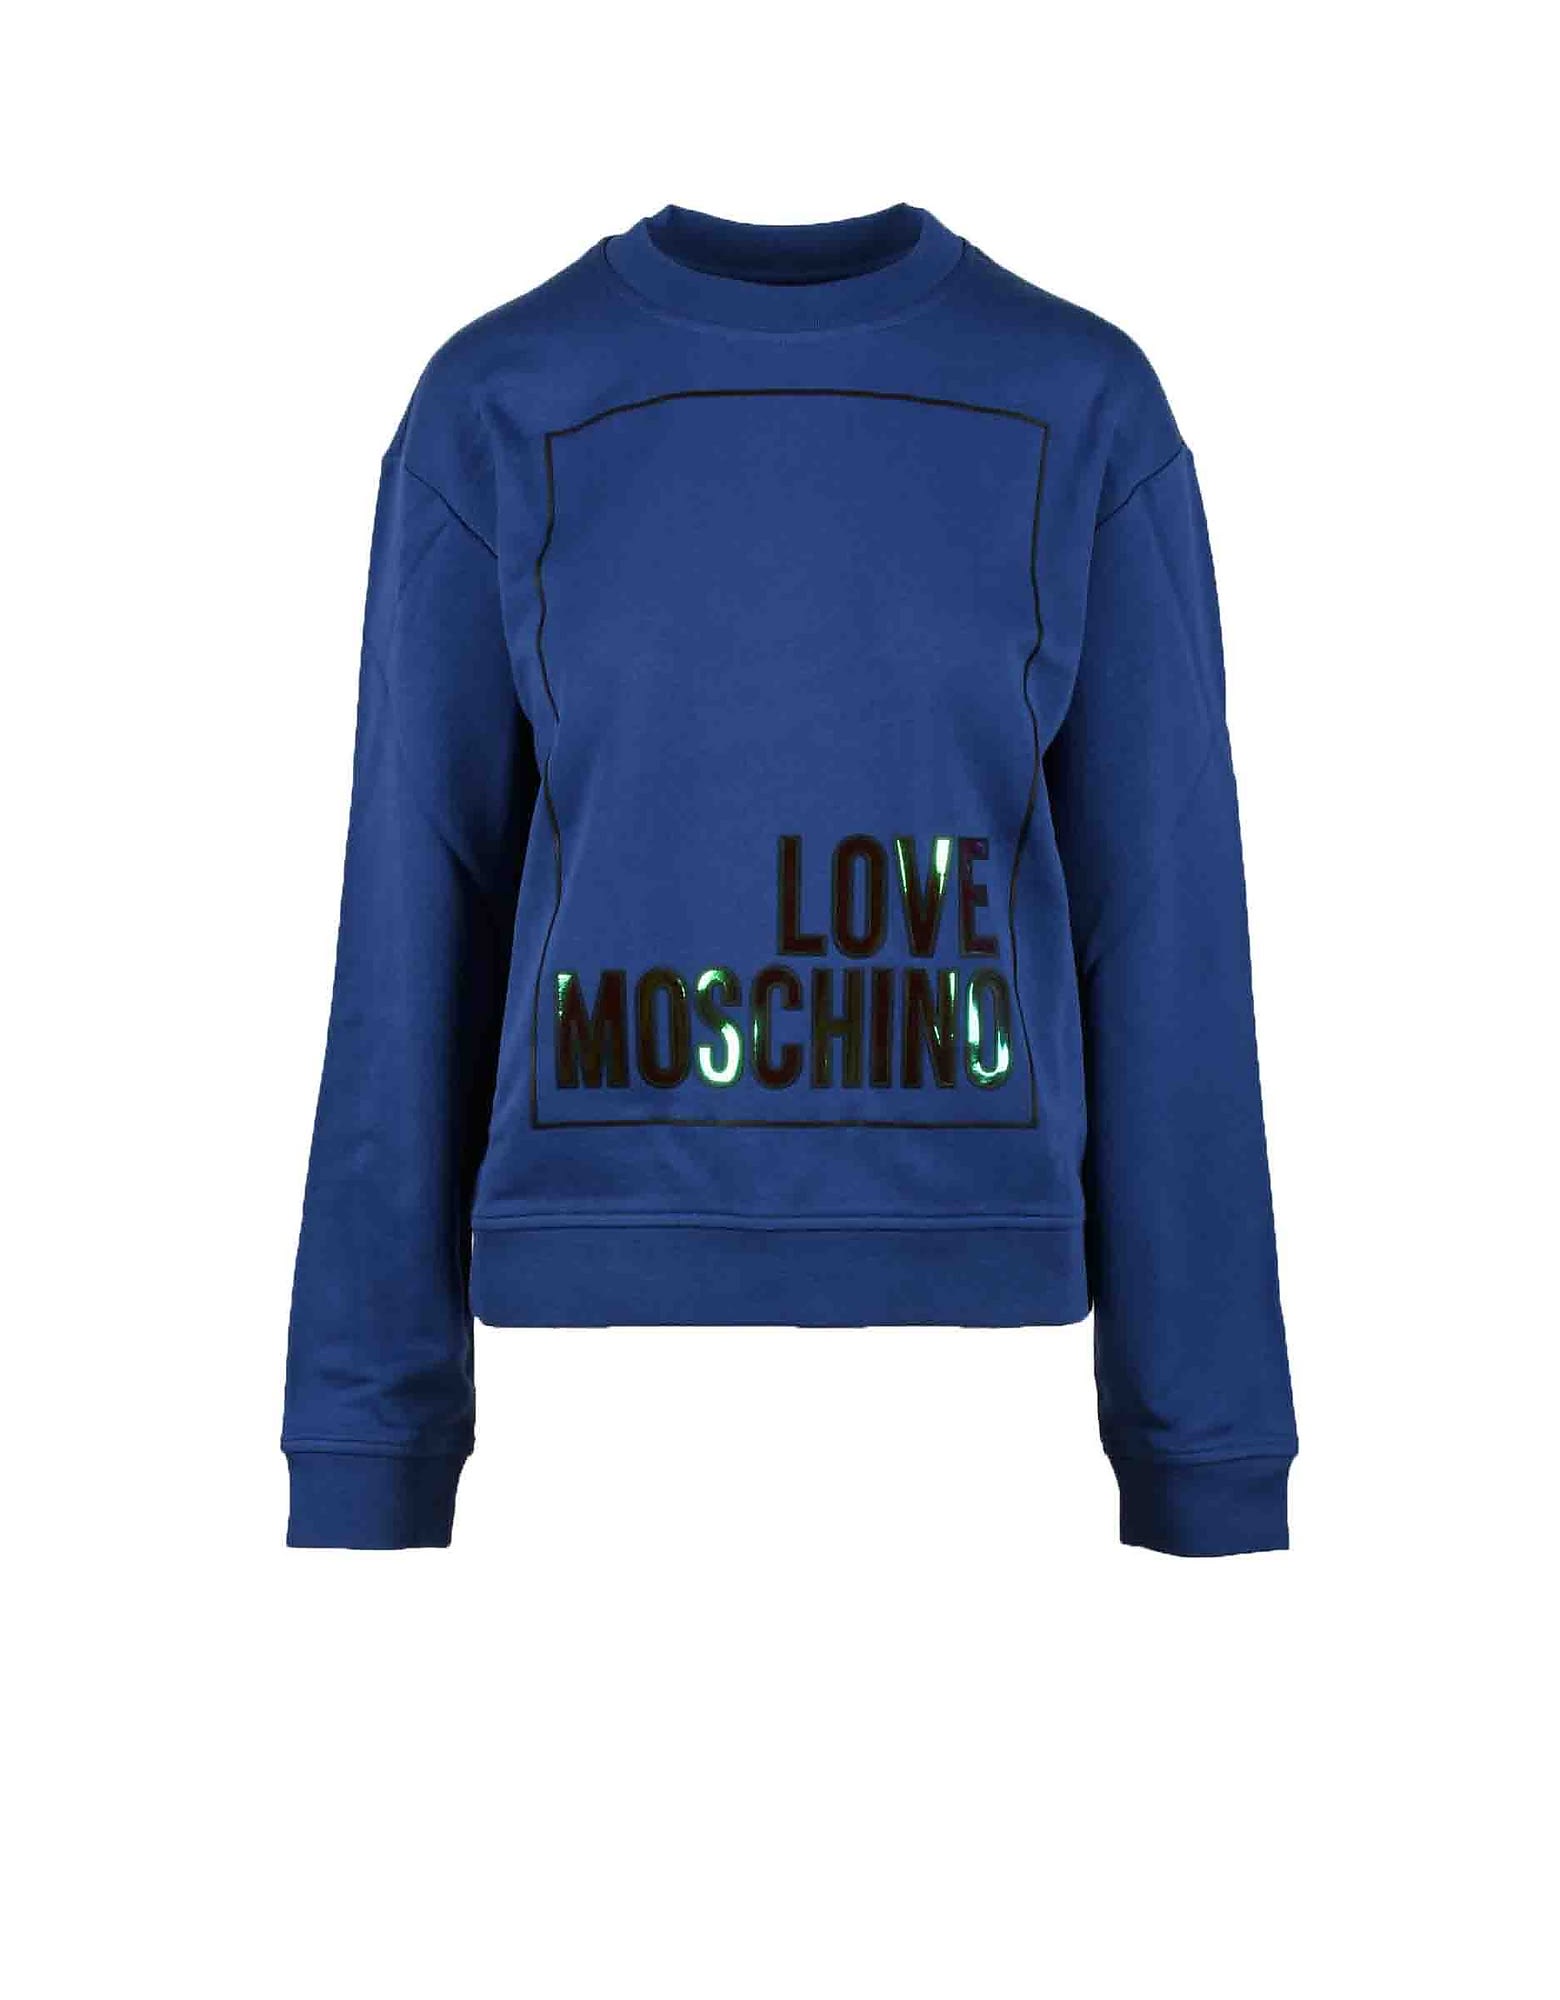 Love Moschino Womens Blue Sweatshirt